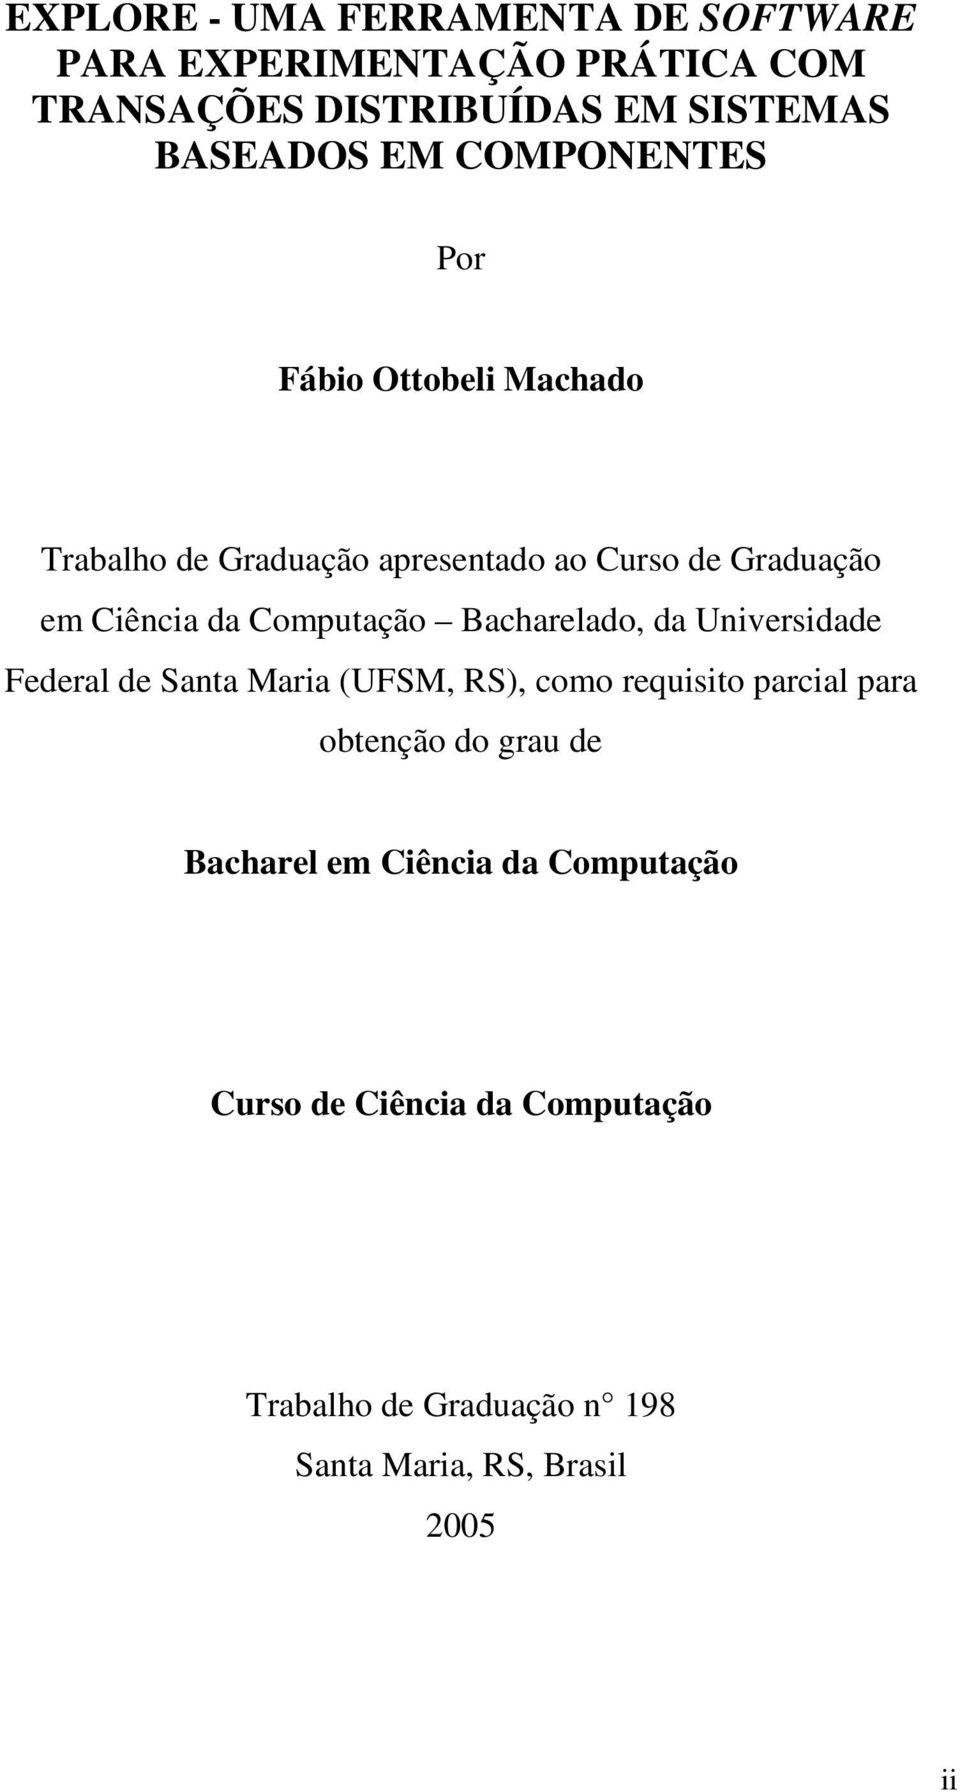 Computação Bacharelado, da Universidade Federal de Santa Maria (UFSM, RS), como requisito parcial para obtenção do